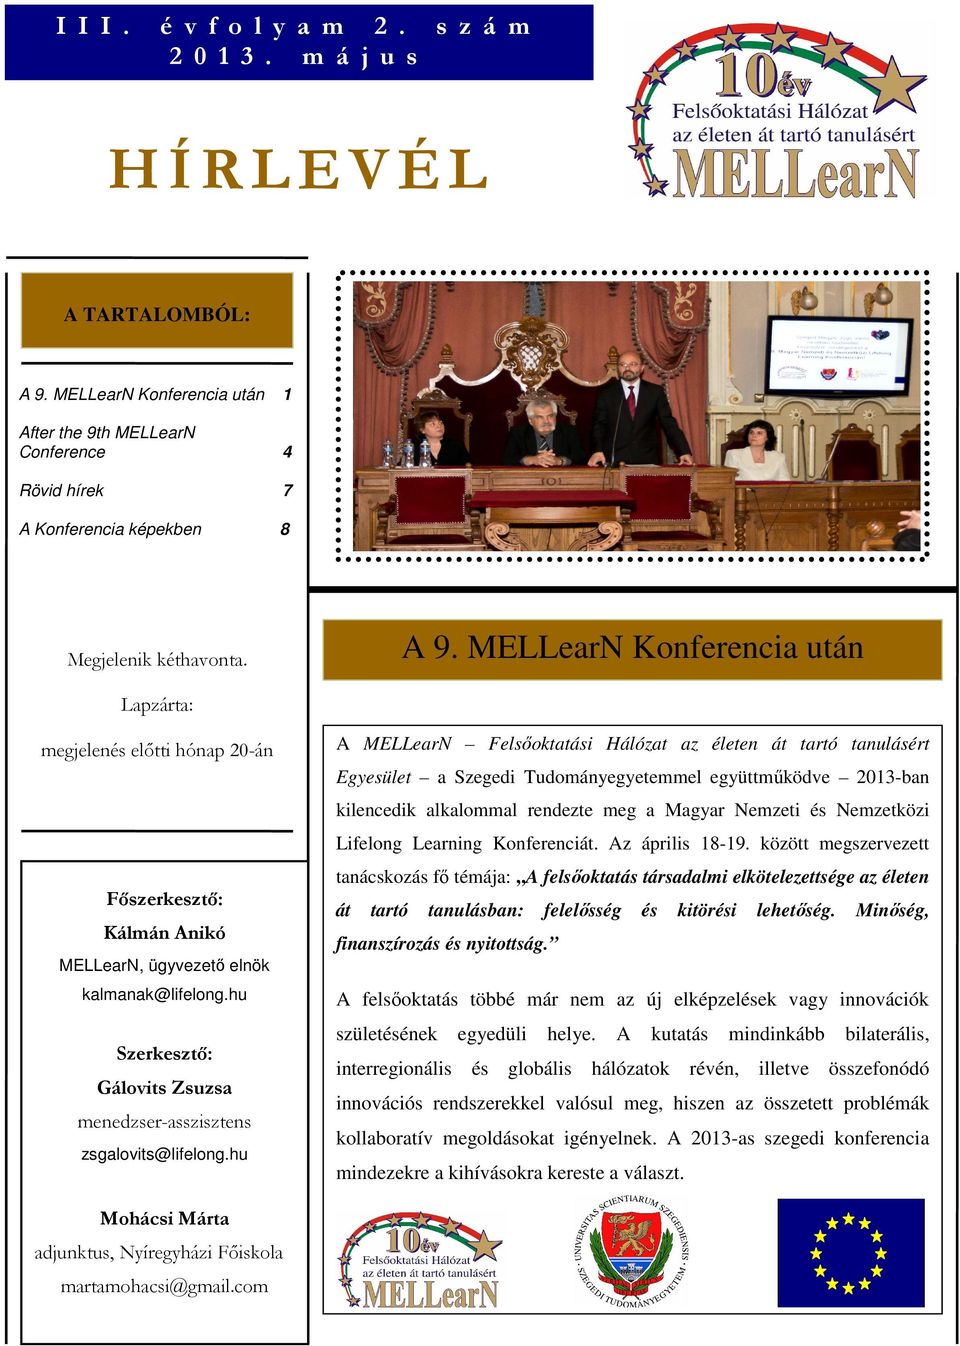 Lapzárta: megjelenés előtti hónap 20-án A MELLearN Felsőoktatási Hálózat az életen át tartó tanulásért Egyesület a Szegedi Tudományegyetemmel együttműködve 2013-ban kilencedik alkalommal rendezte meg